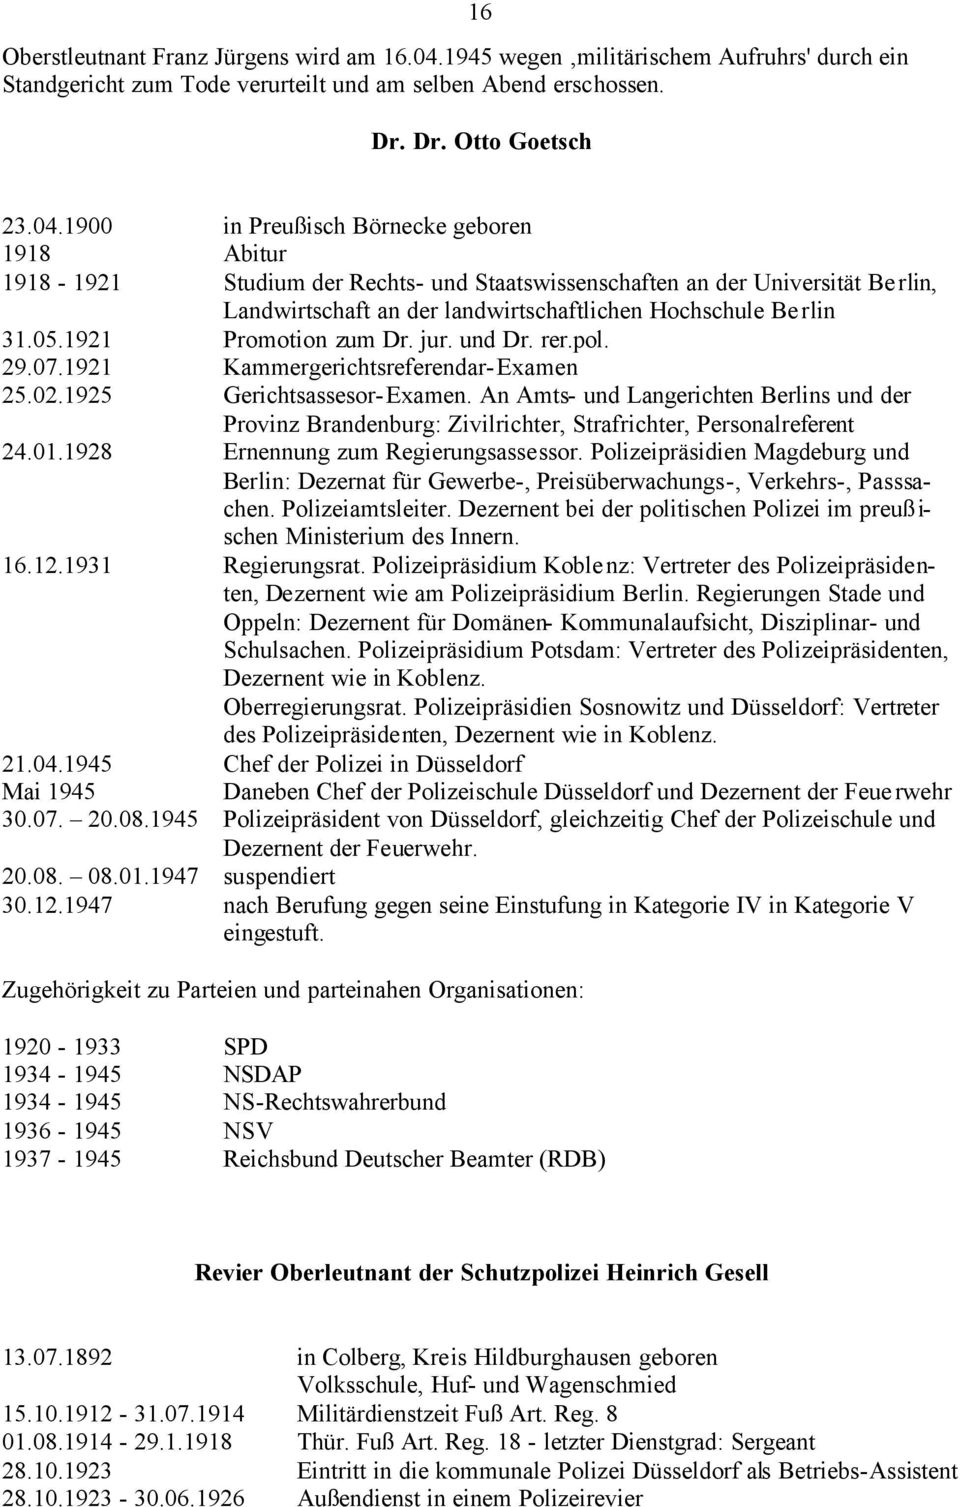 1900 in Preußisch Börnecke geboren 1918 Abitur 1918-1921 Studium der Rechts- und Staatswissenschaften an der Universität Berlin, Landwirtschaft an der landwirtschaftlichen Hochschule Berlin 31.05.